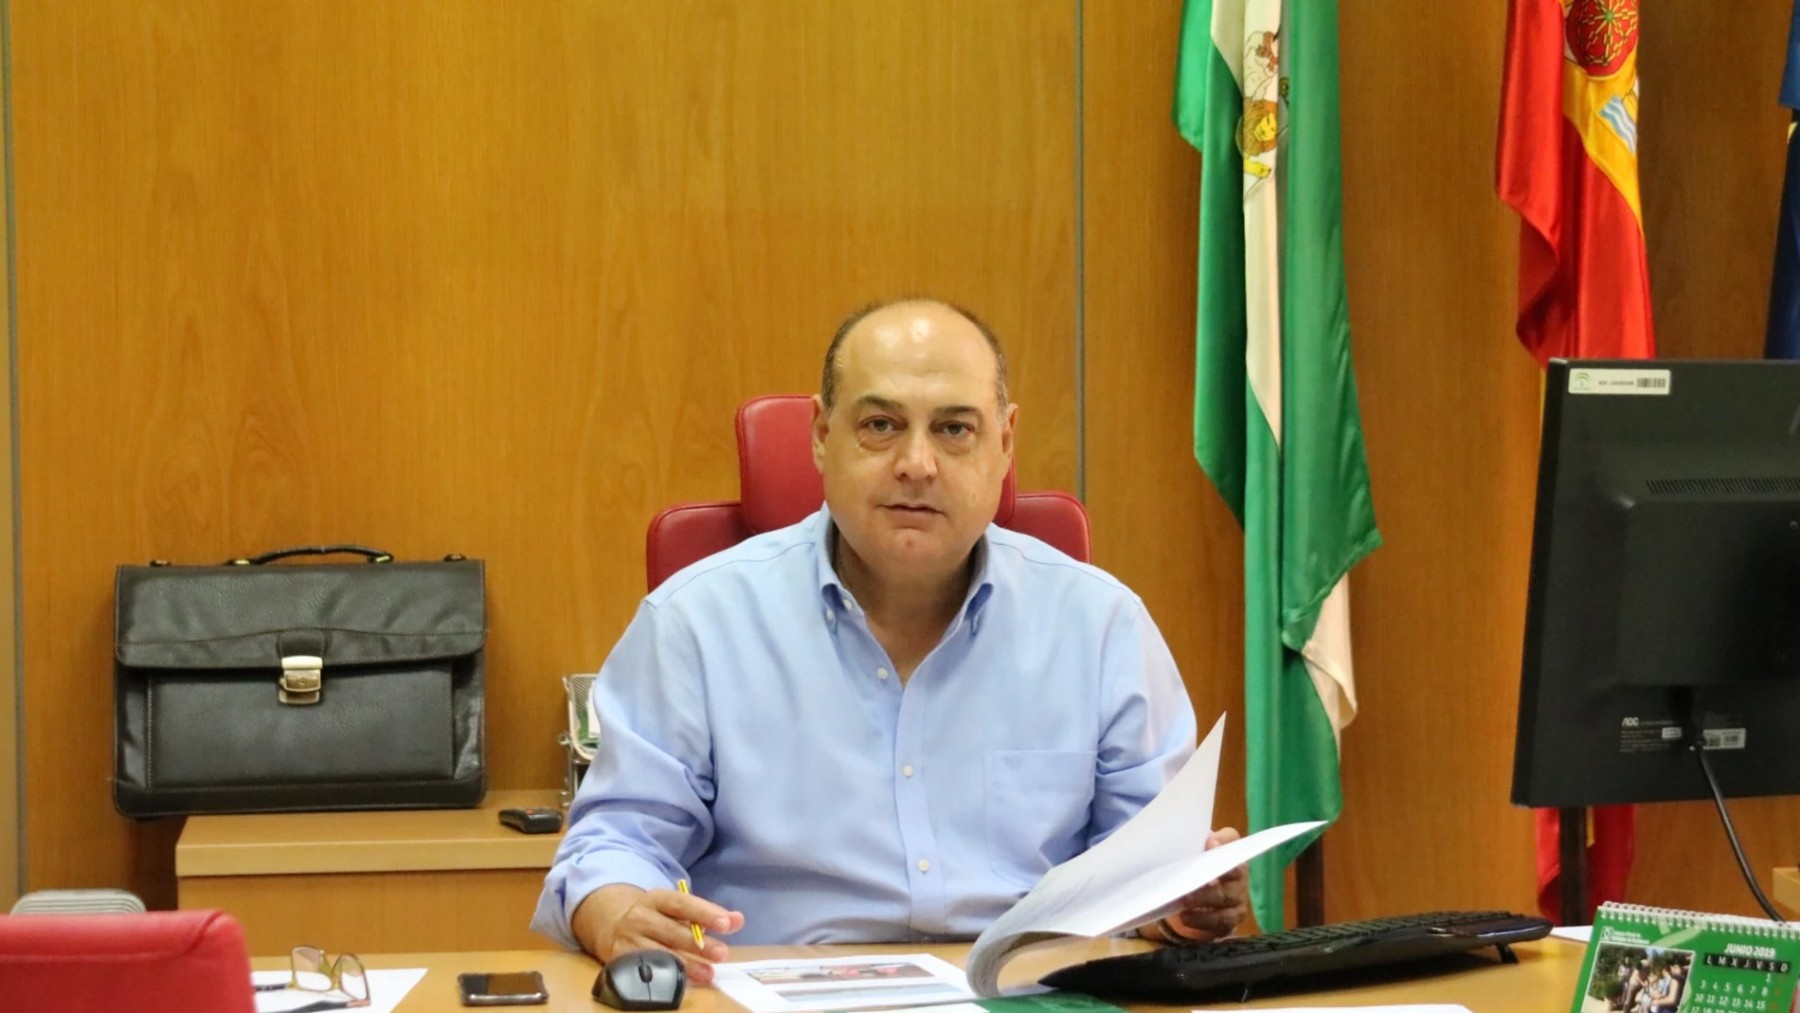 el director general de Pesca y Acuicultura de la Junta de Andalucía, José Manuel Martínez Malia.